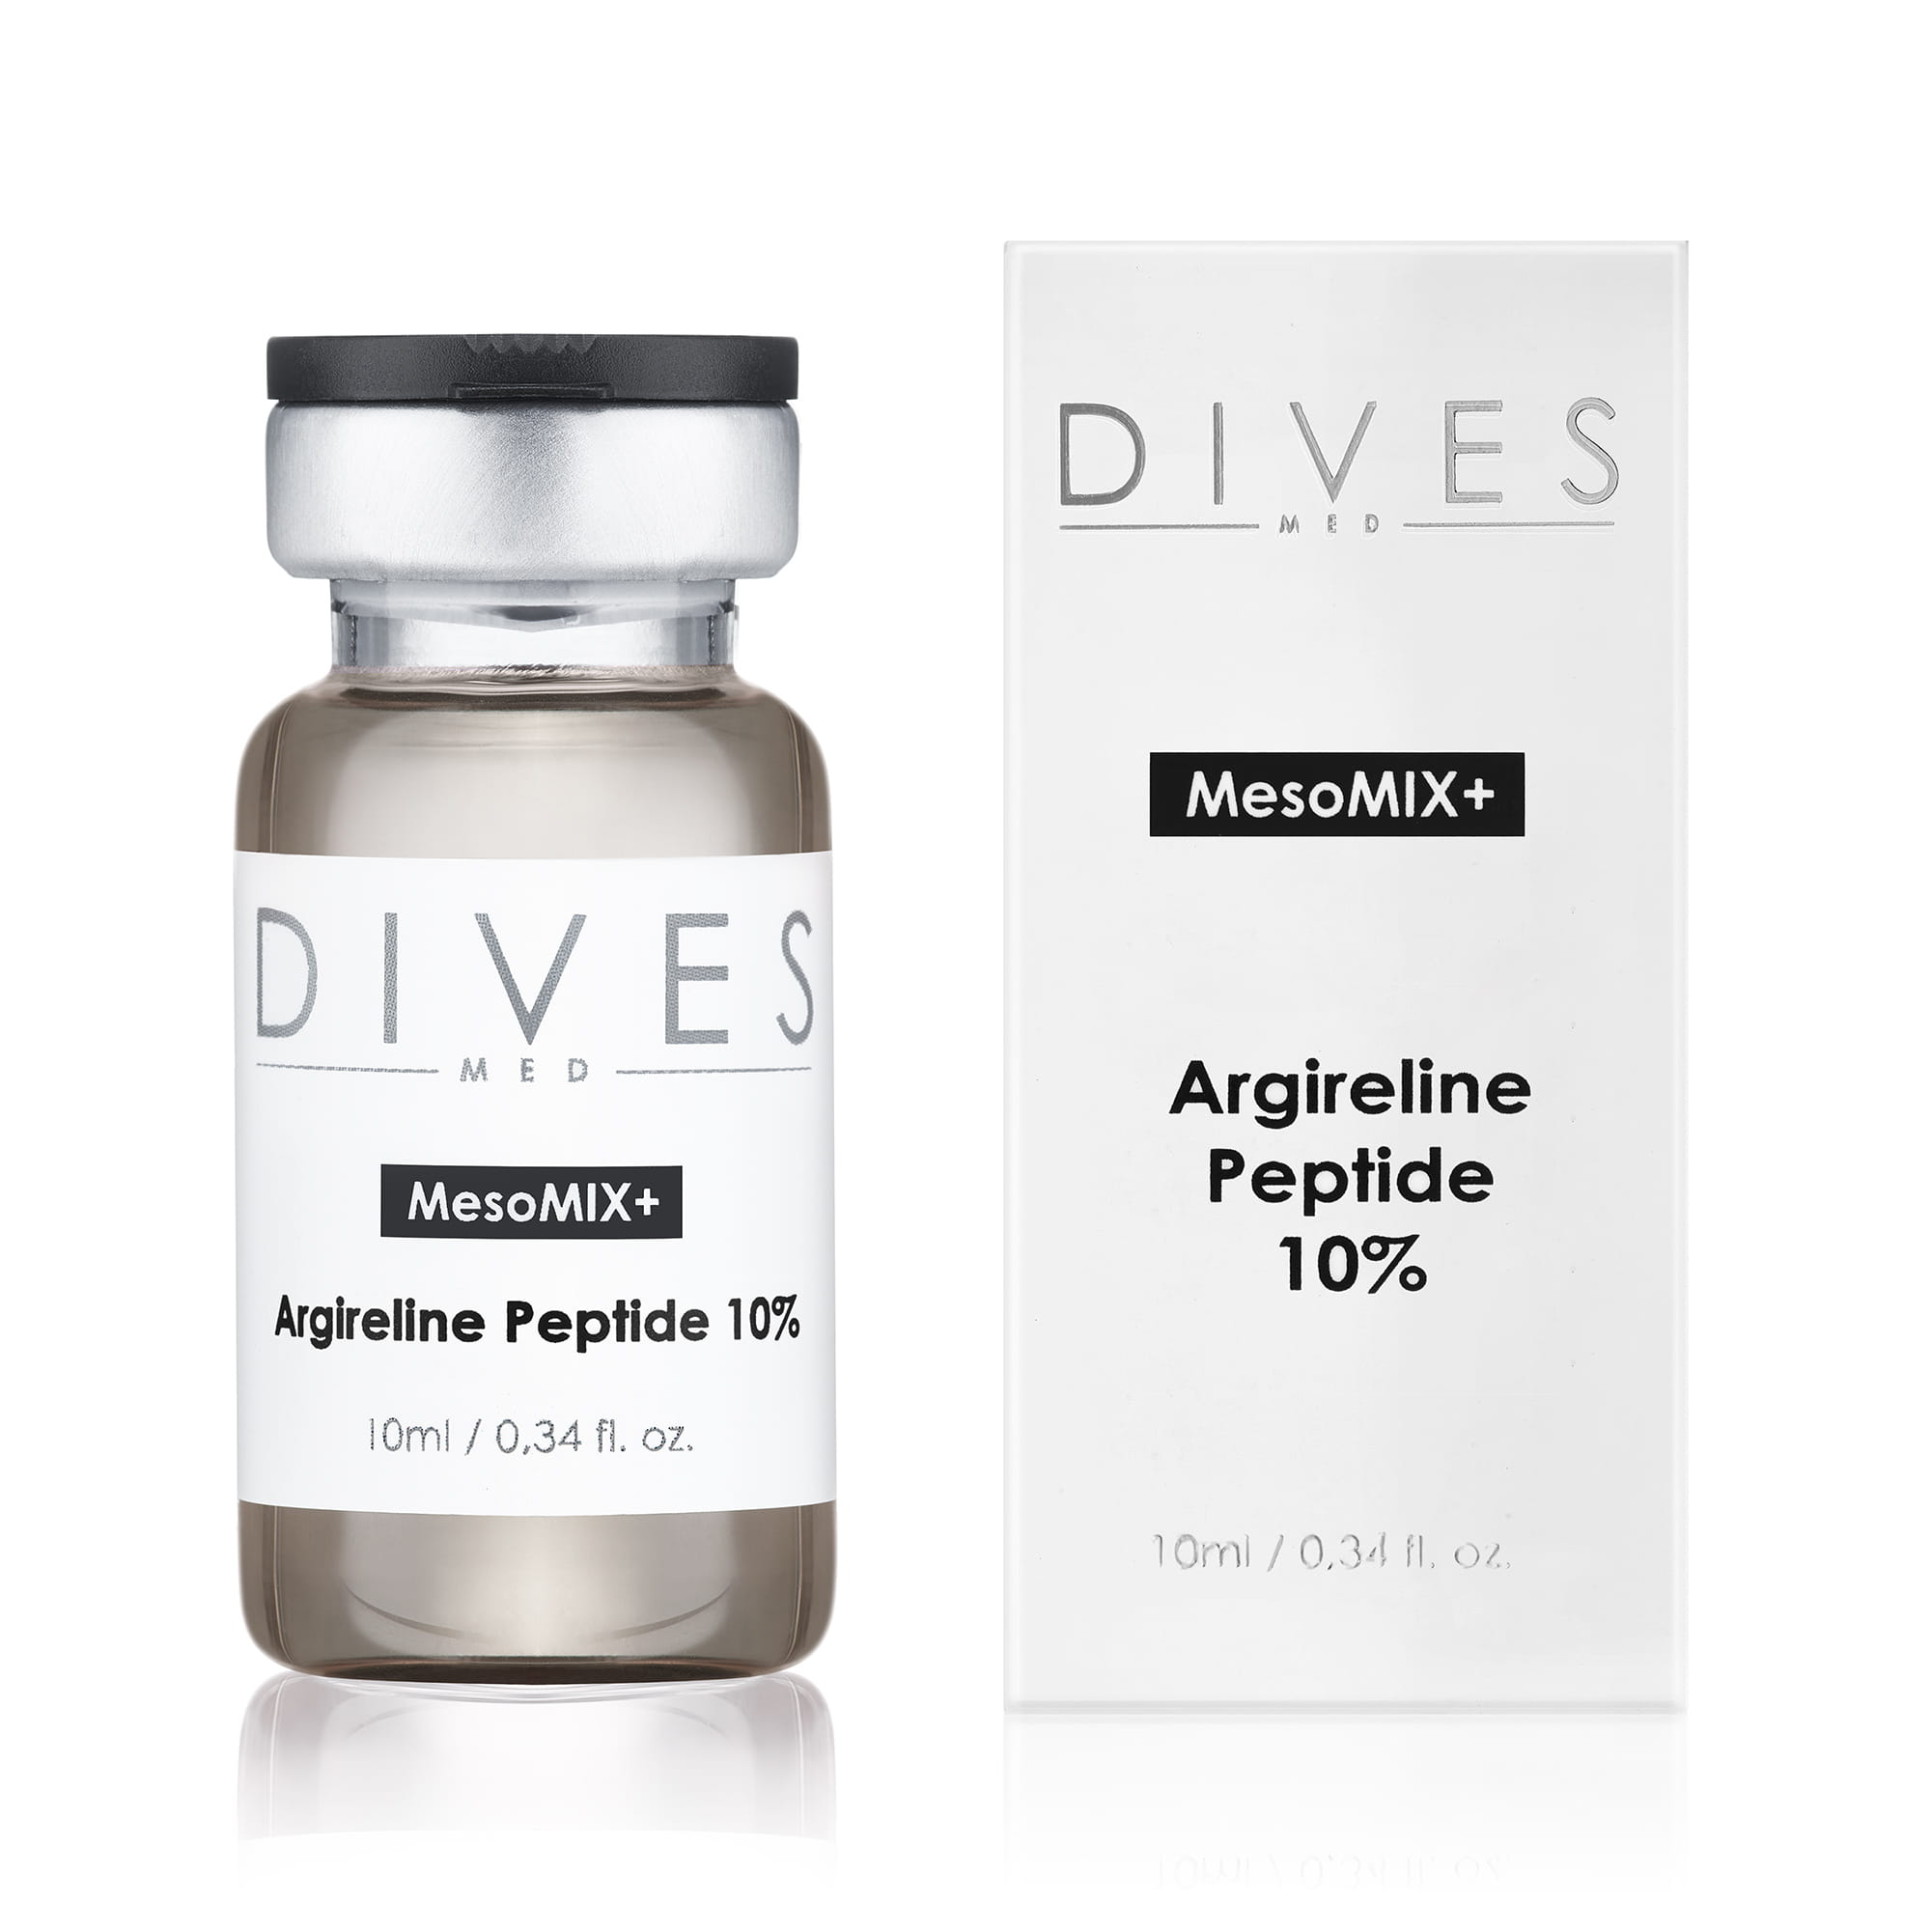 DIVES MED - Argireline Peptide 10% (10x10ml)